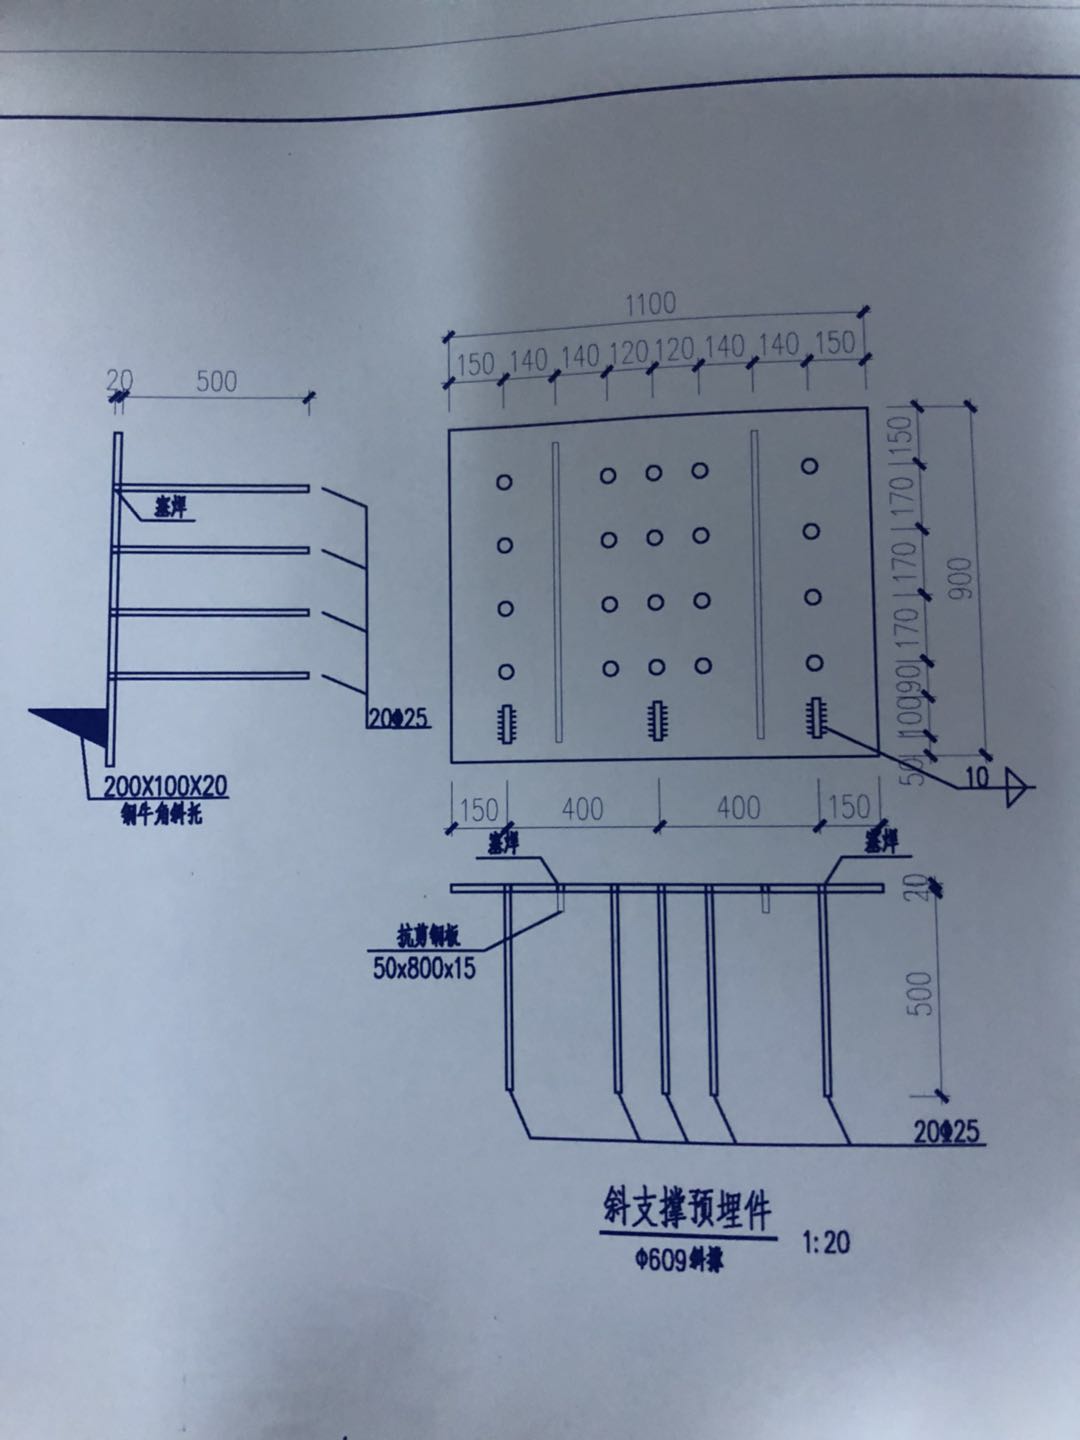 杭州地铁7号线工程施工总承包土建6工区袋装预埋钢板询价采购